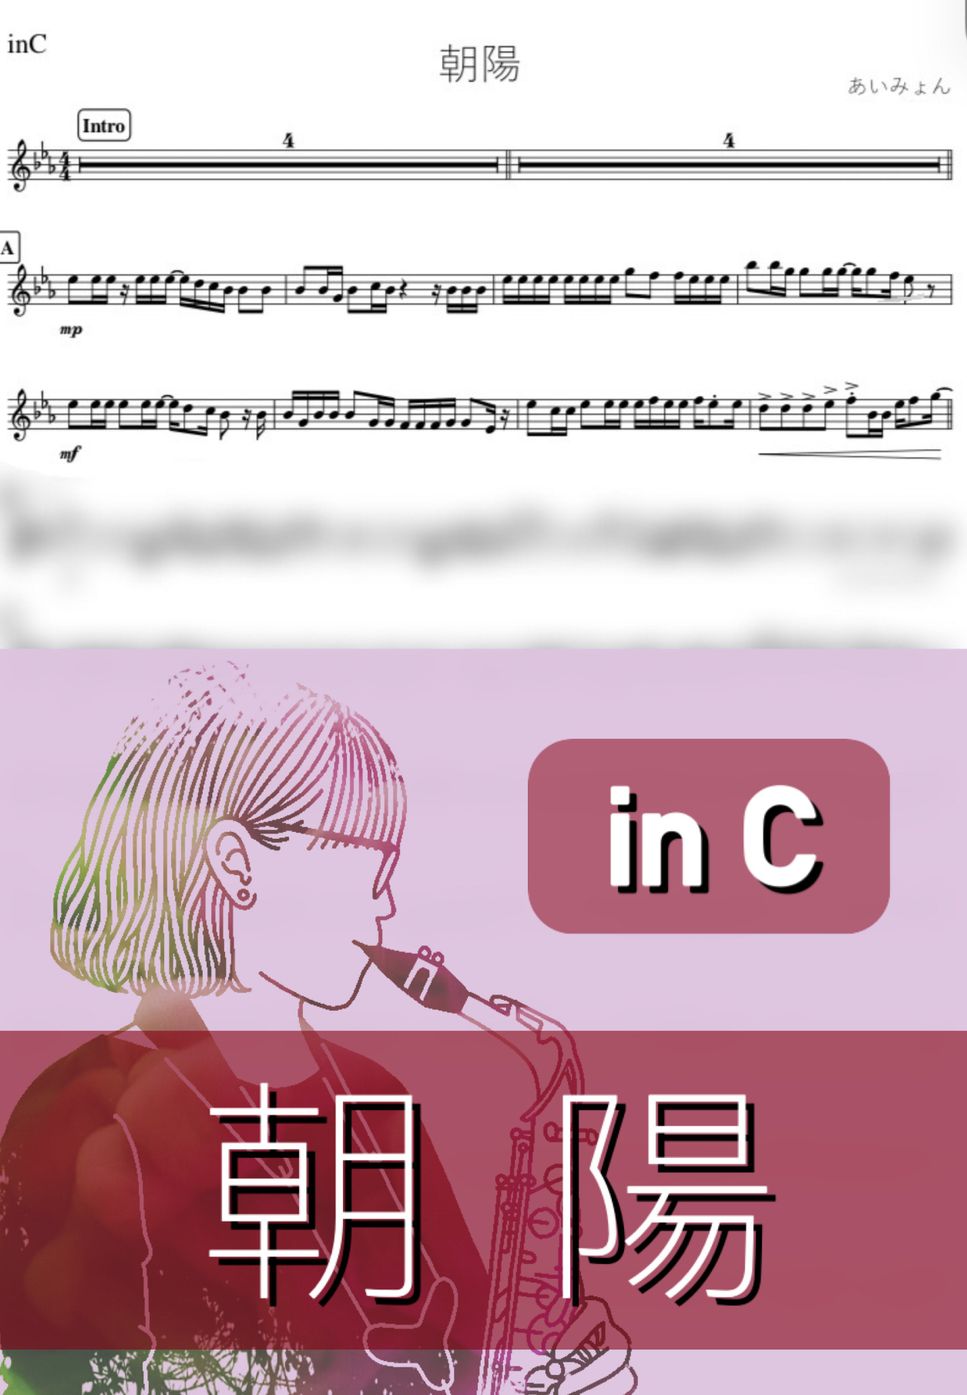 あいみょん - 朝陽 (C) by kanamusic